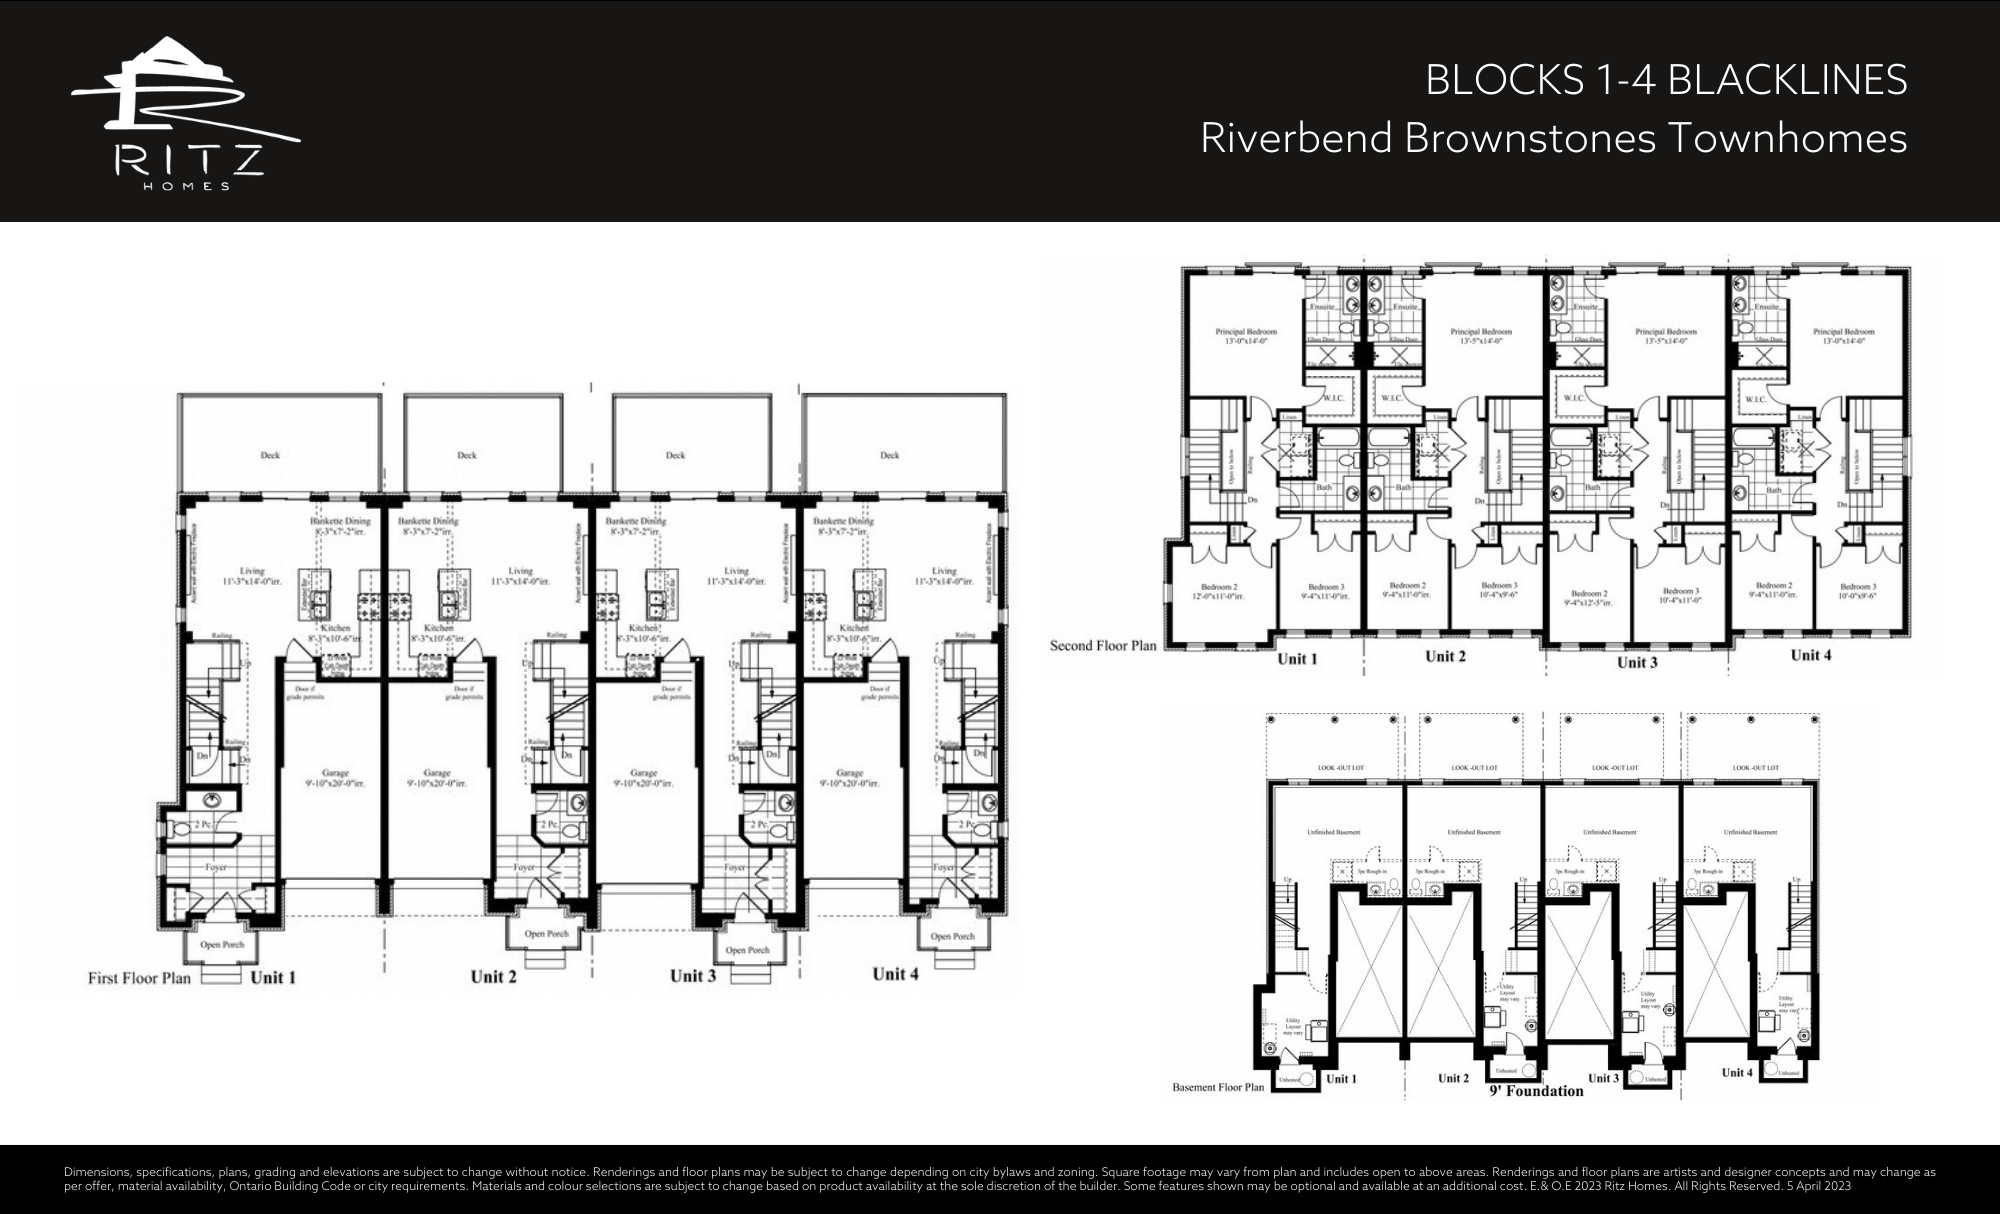 Riverbend Brownstones_Floorplan Block 1-4 Blacklines_2